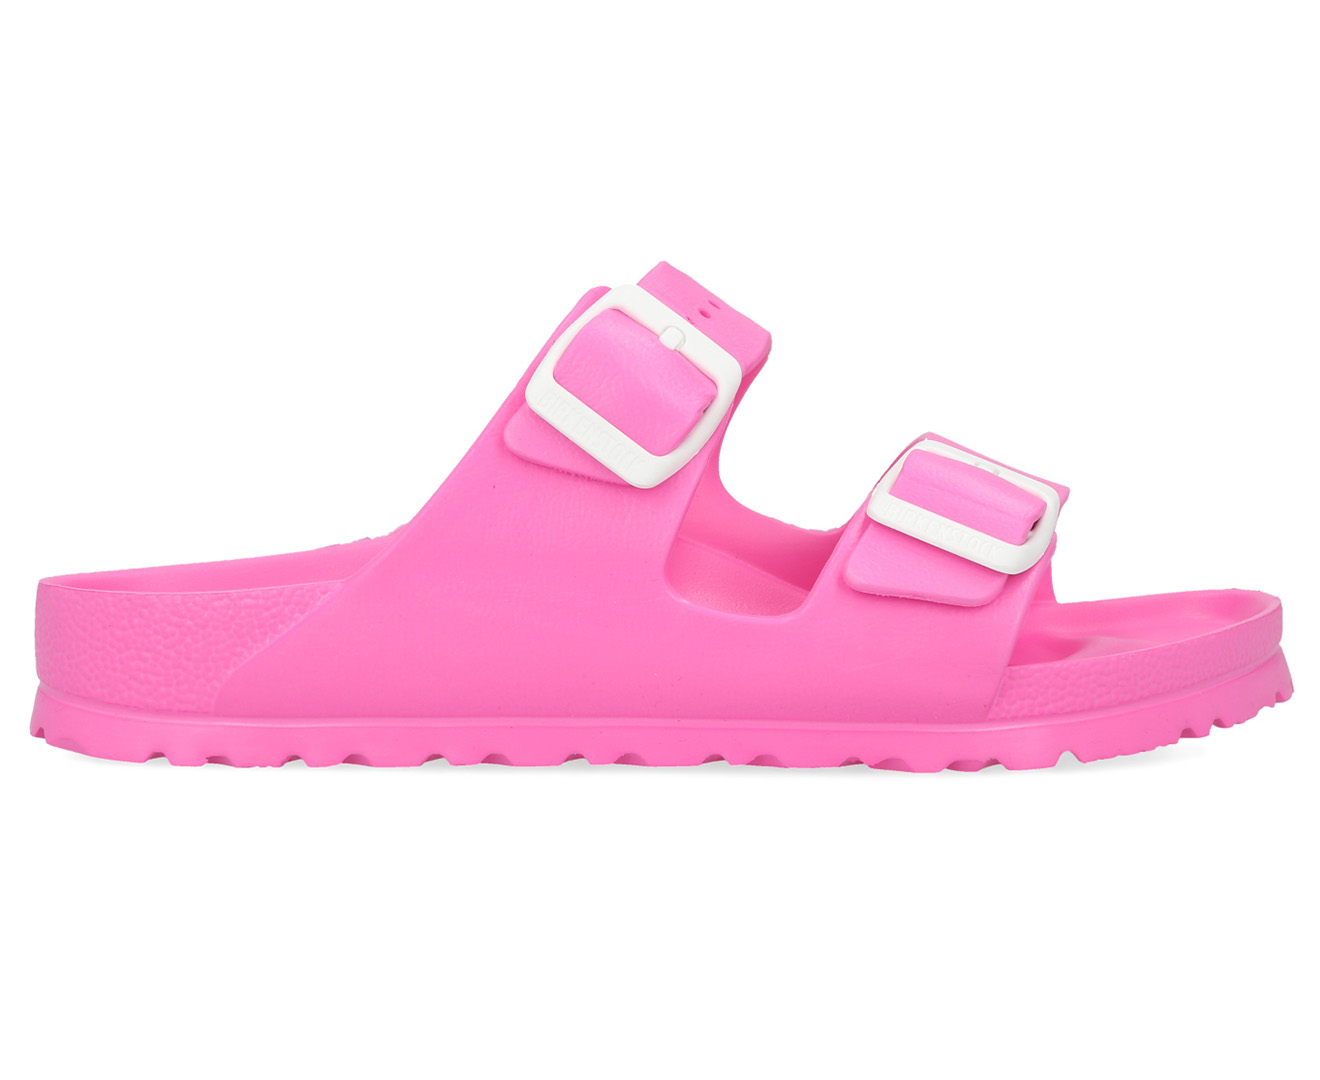 Birkenstock Women's Arizona Narrow Fit EVA Sandals - Neon Pink | Catch ...